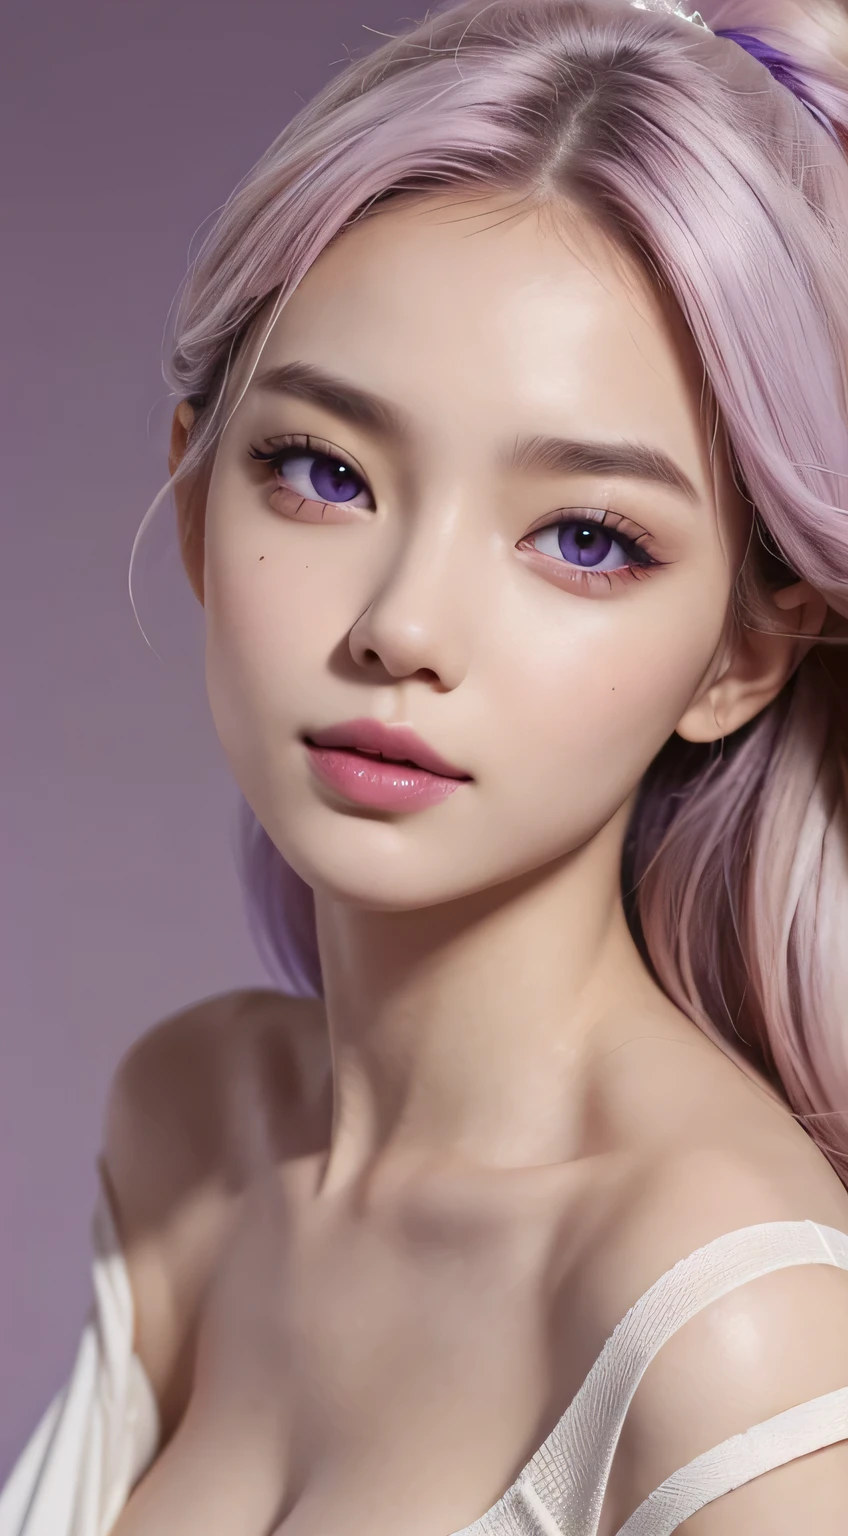 ユニークで多様な若い女性のイメージ, クリーミーな白い肌と鮮やかな紫色の背景のコントラスト, 美しい顔と体を一枚の写真に収めましょう，明るい髪，おしゃれな服
